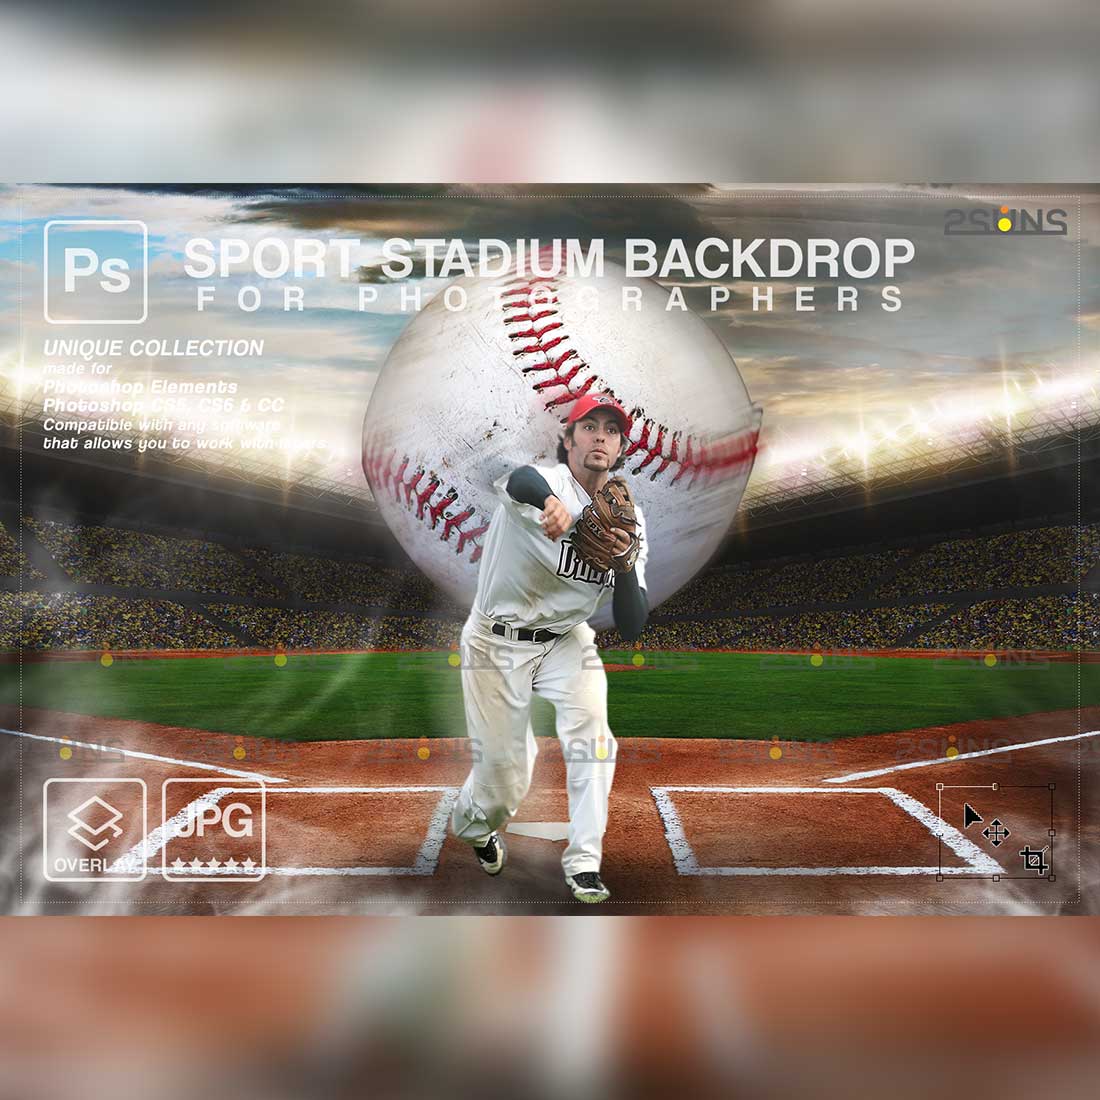 Sports Baseball Backdrop Digital Photoshop Background Overlay Cover Image.